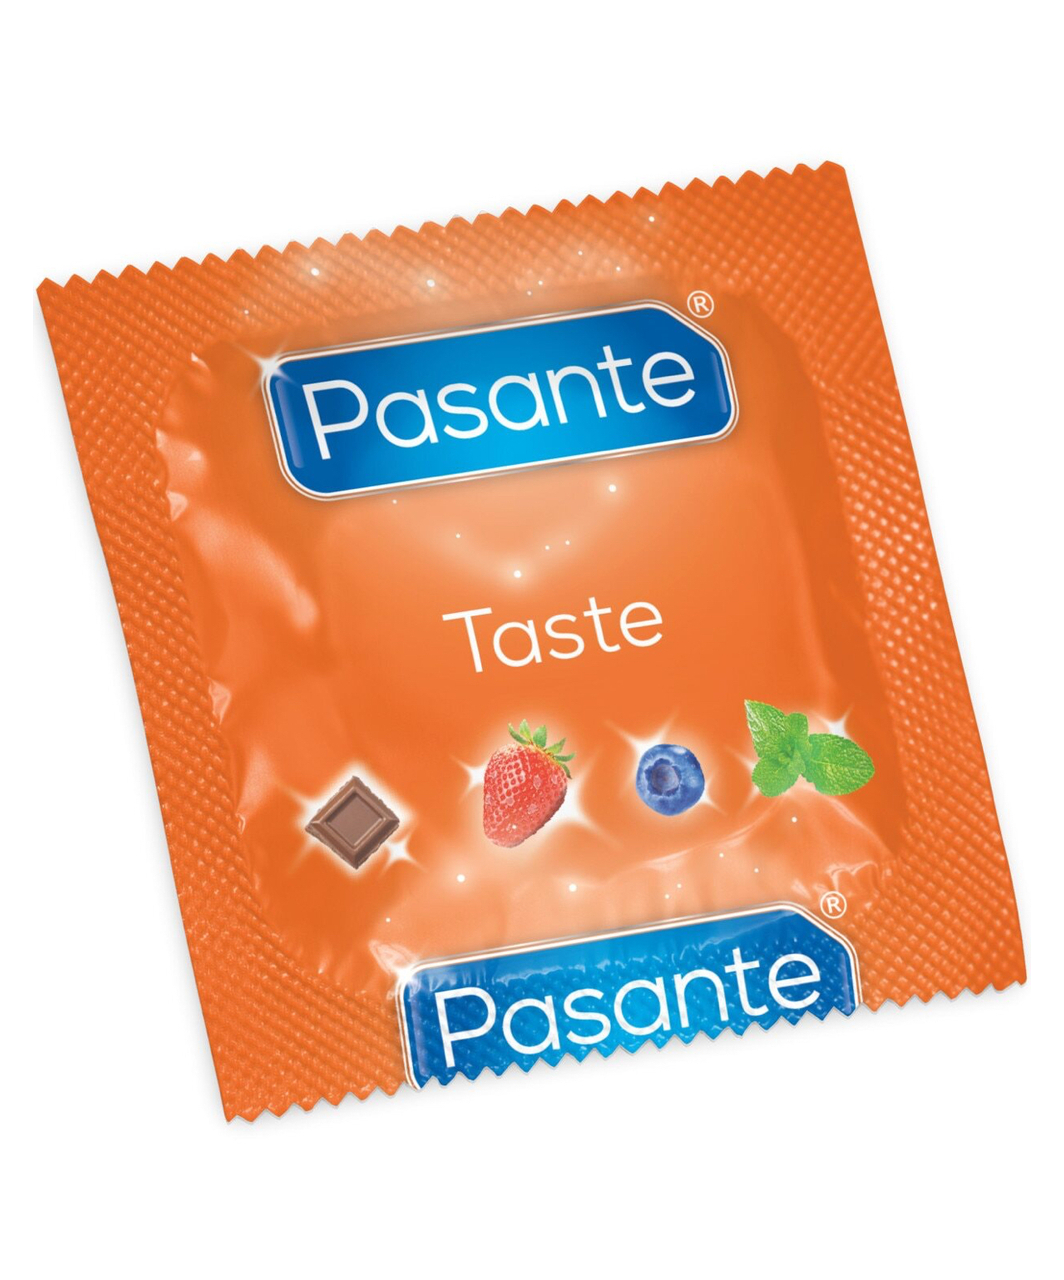 Pasante Taste kondoomid (3 / 12 / 144 tk)